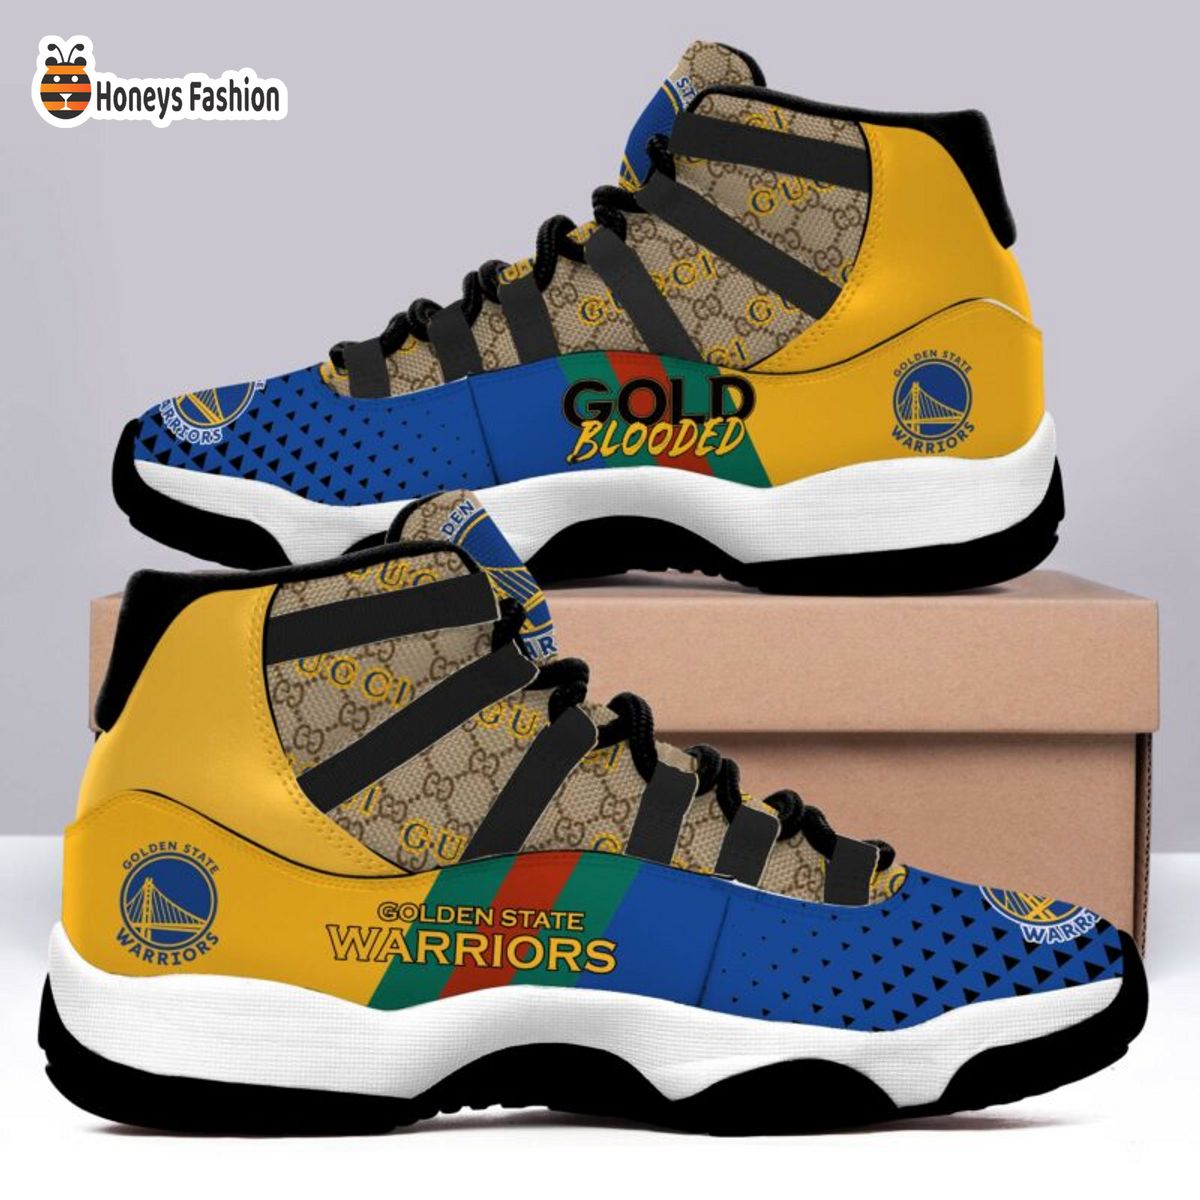 Golden State Warriors x Gucci Air Jordan 11 Sneaker